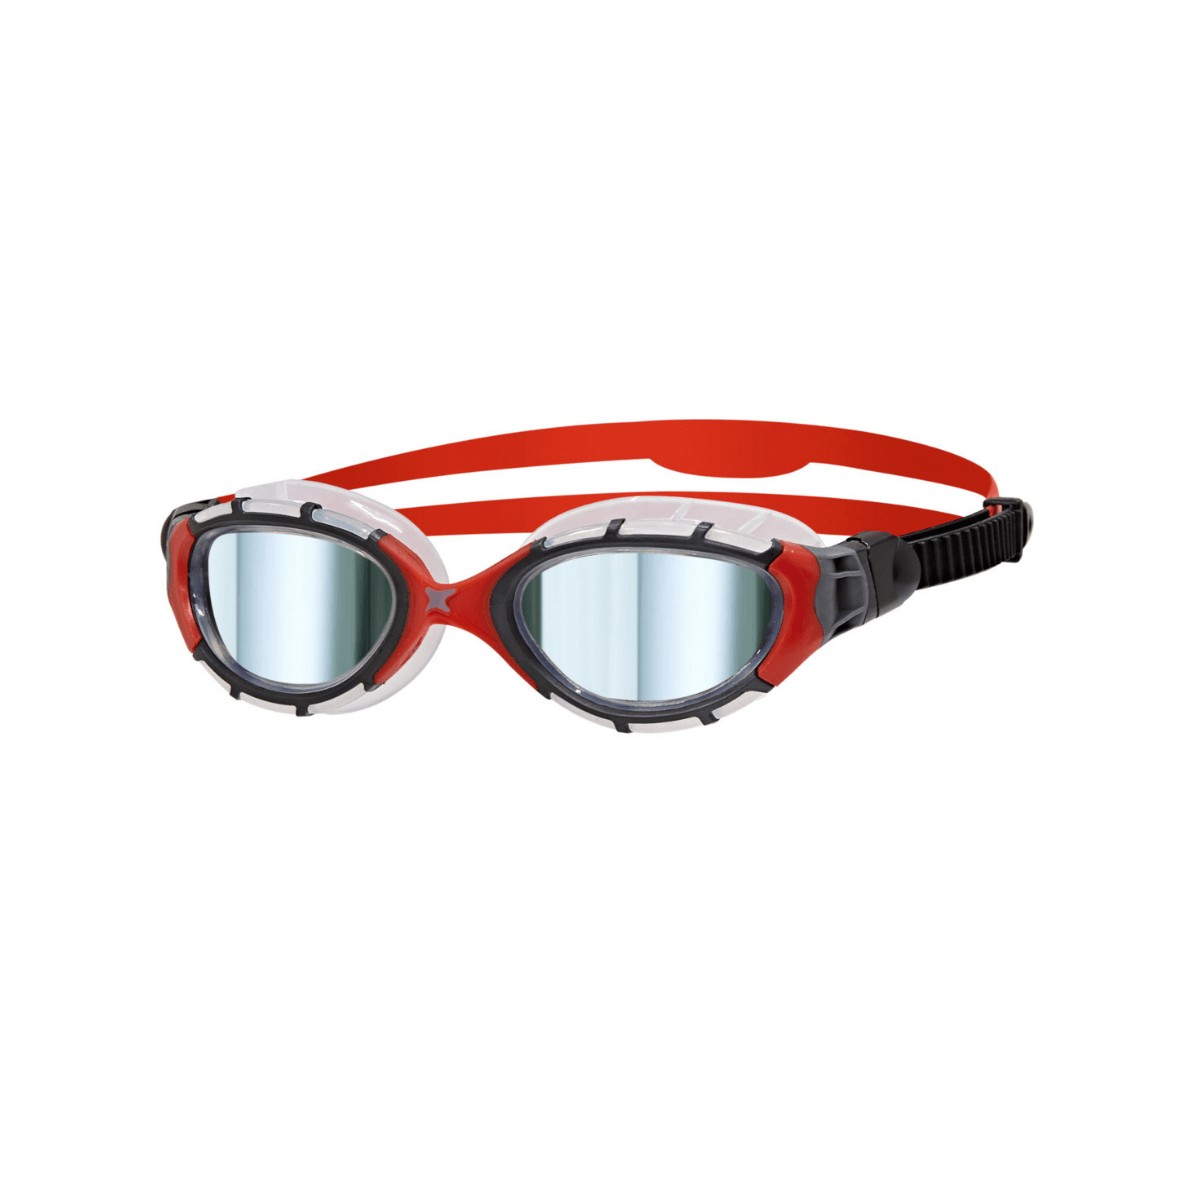 Photos - Swim Goggles Zoggs Predator Flex Titanium Goggles Regular Fit Red Black 461054 